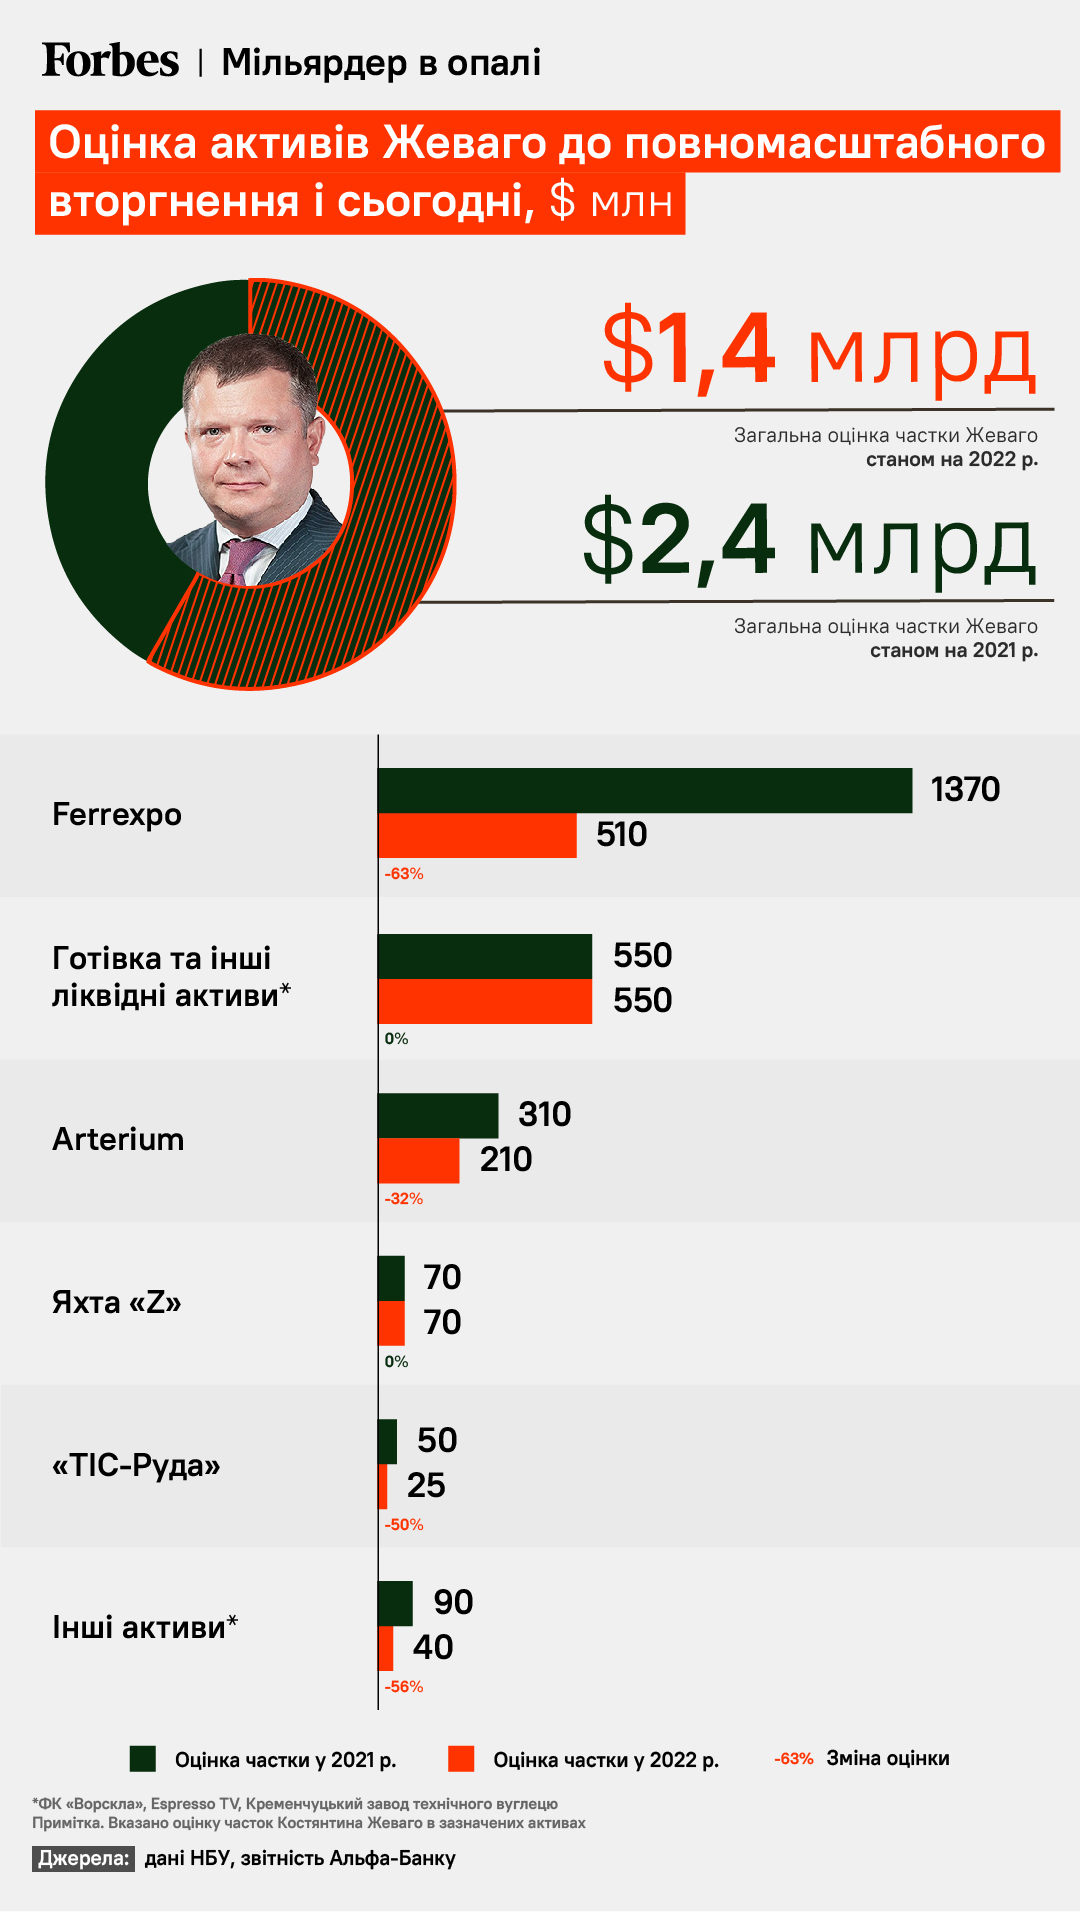 В декабре 2022-го Forbes переоценил состояние Жеваго в $1,4 млрд